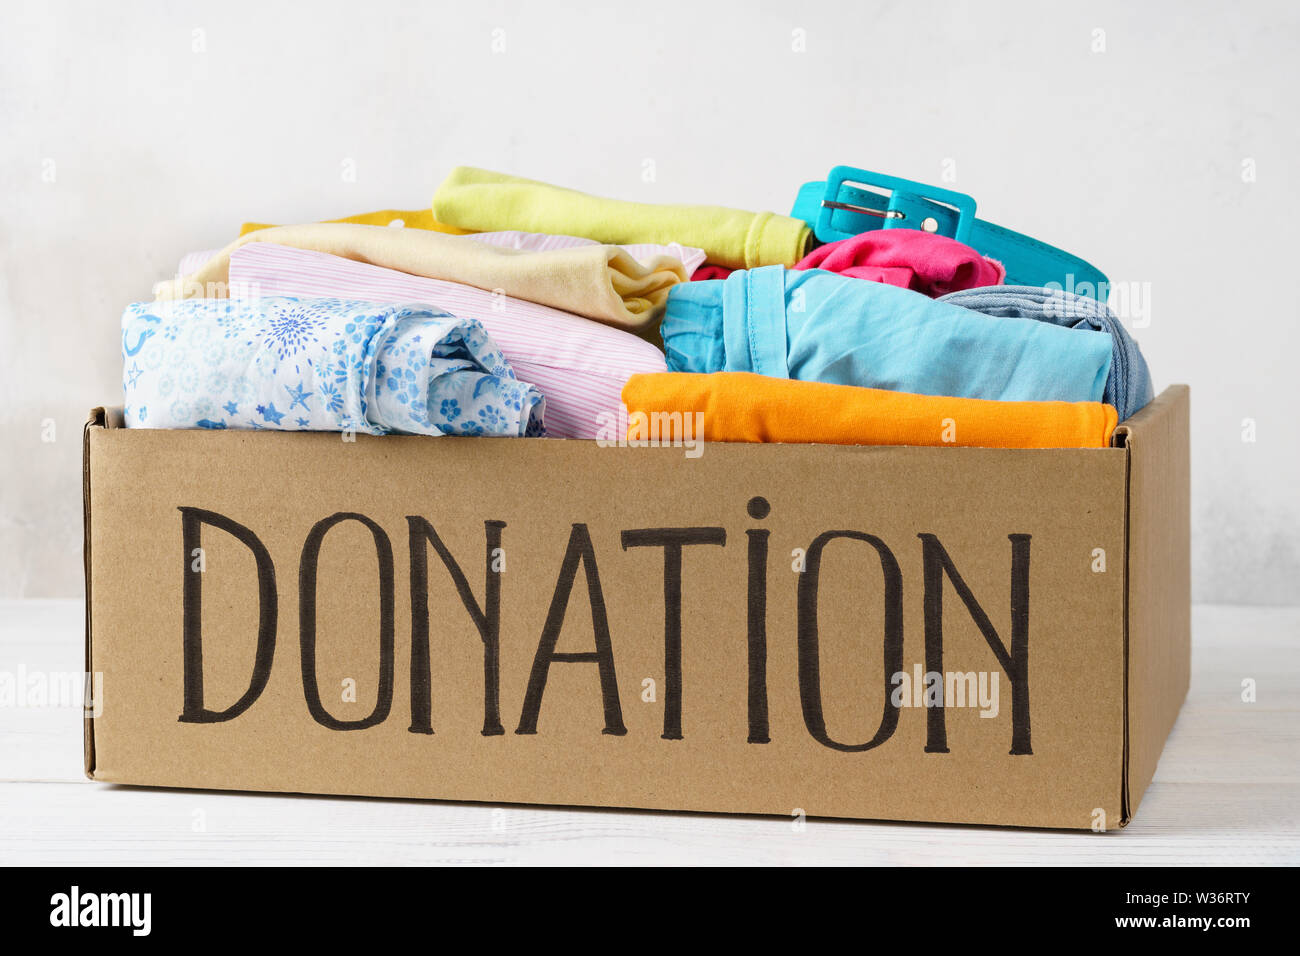 Donation box avec différents vêtements colorés sur une table. Banque D'Images